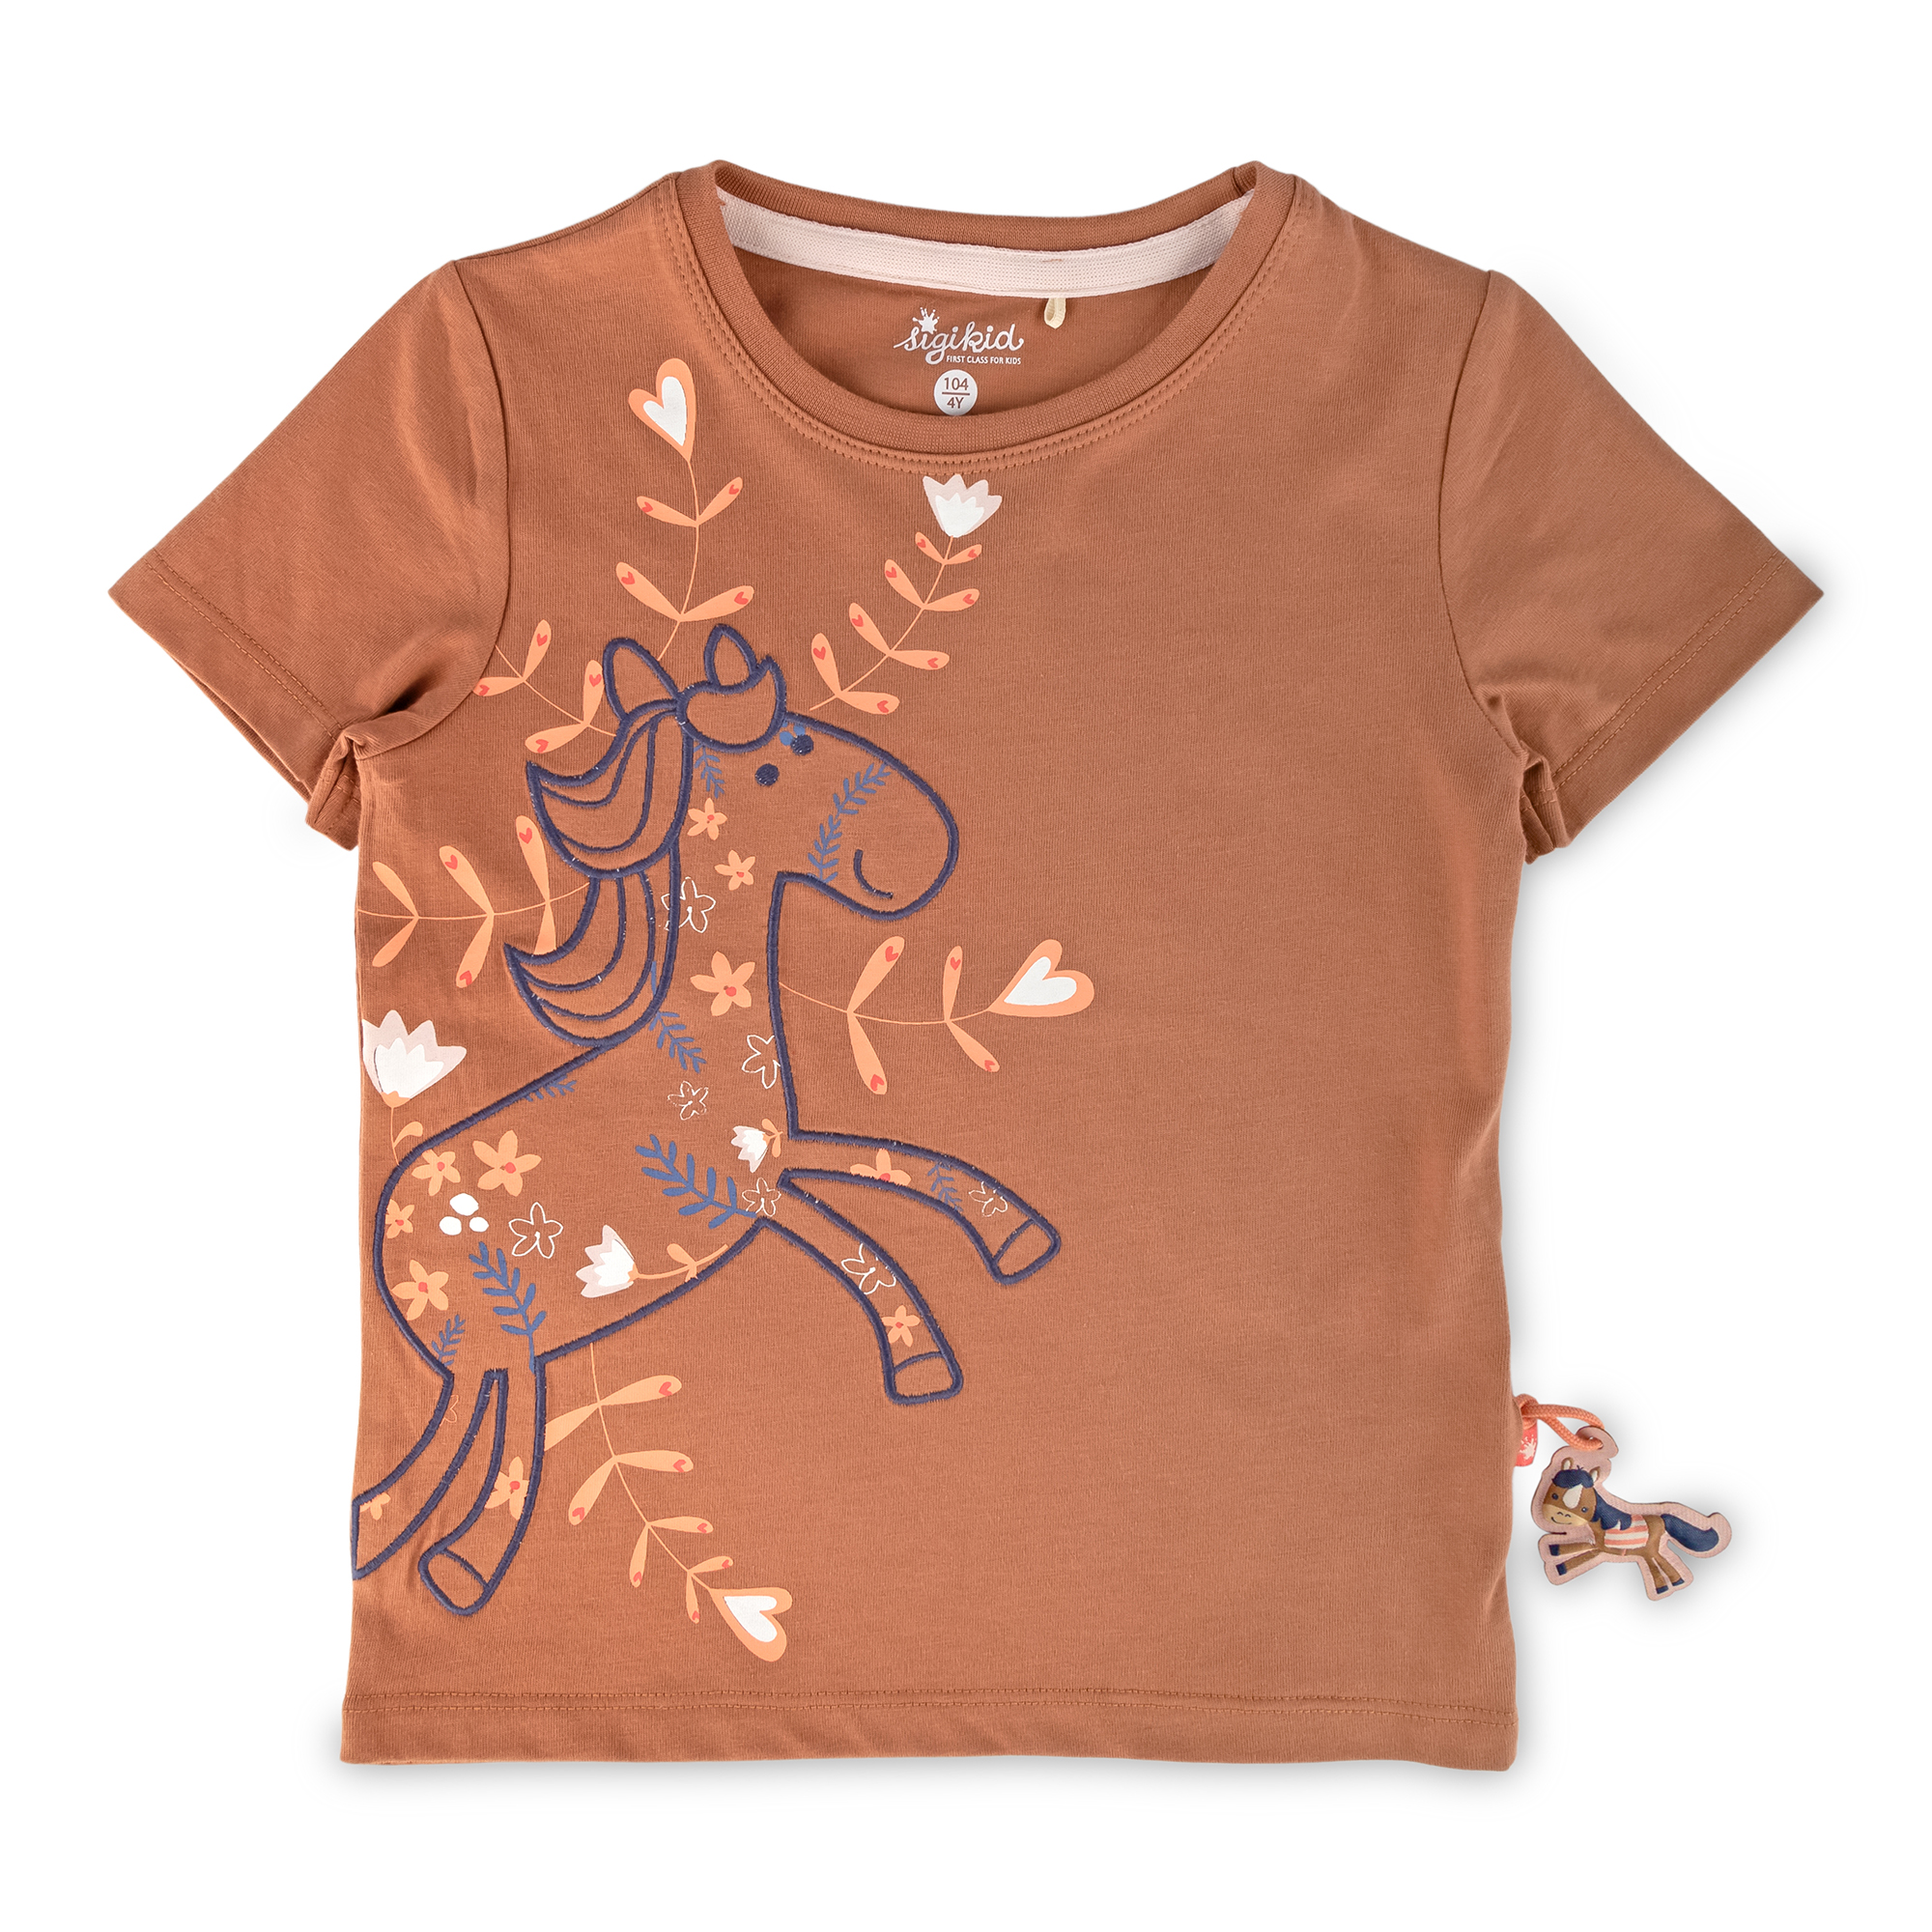 Kinder T-Shirt mit Pferde Motiv, hellbraun